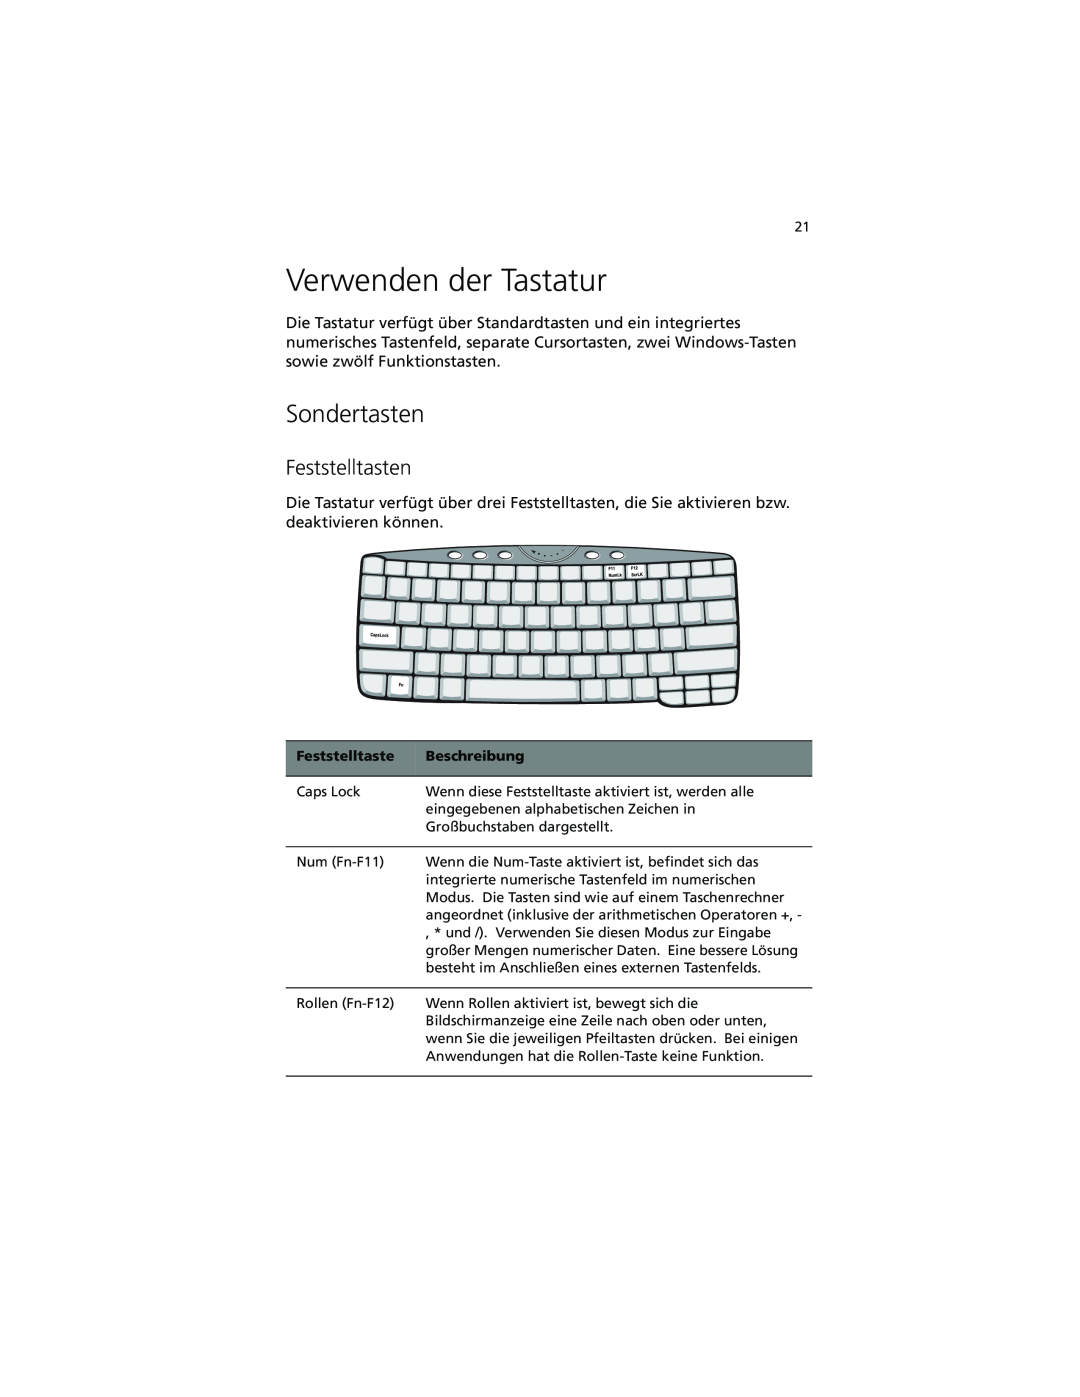 Acer C100-Series manual Verwenden der Tastatur, Sondertasten, Feststelltasten 